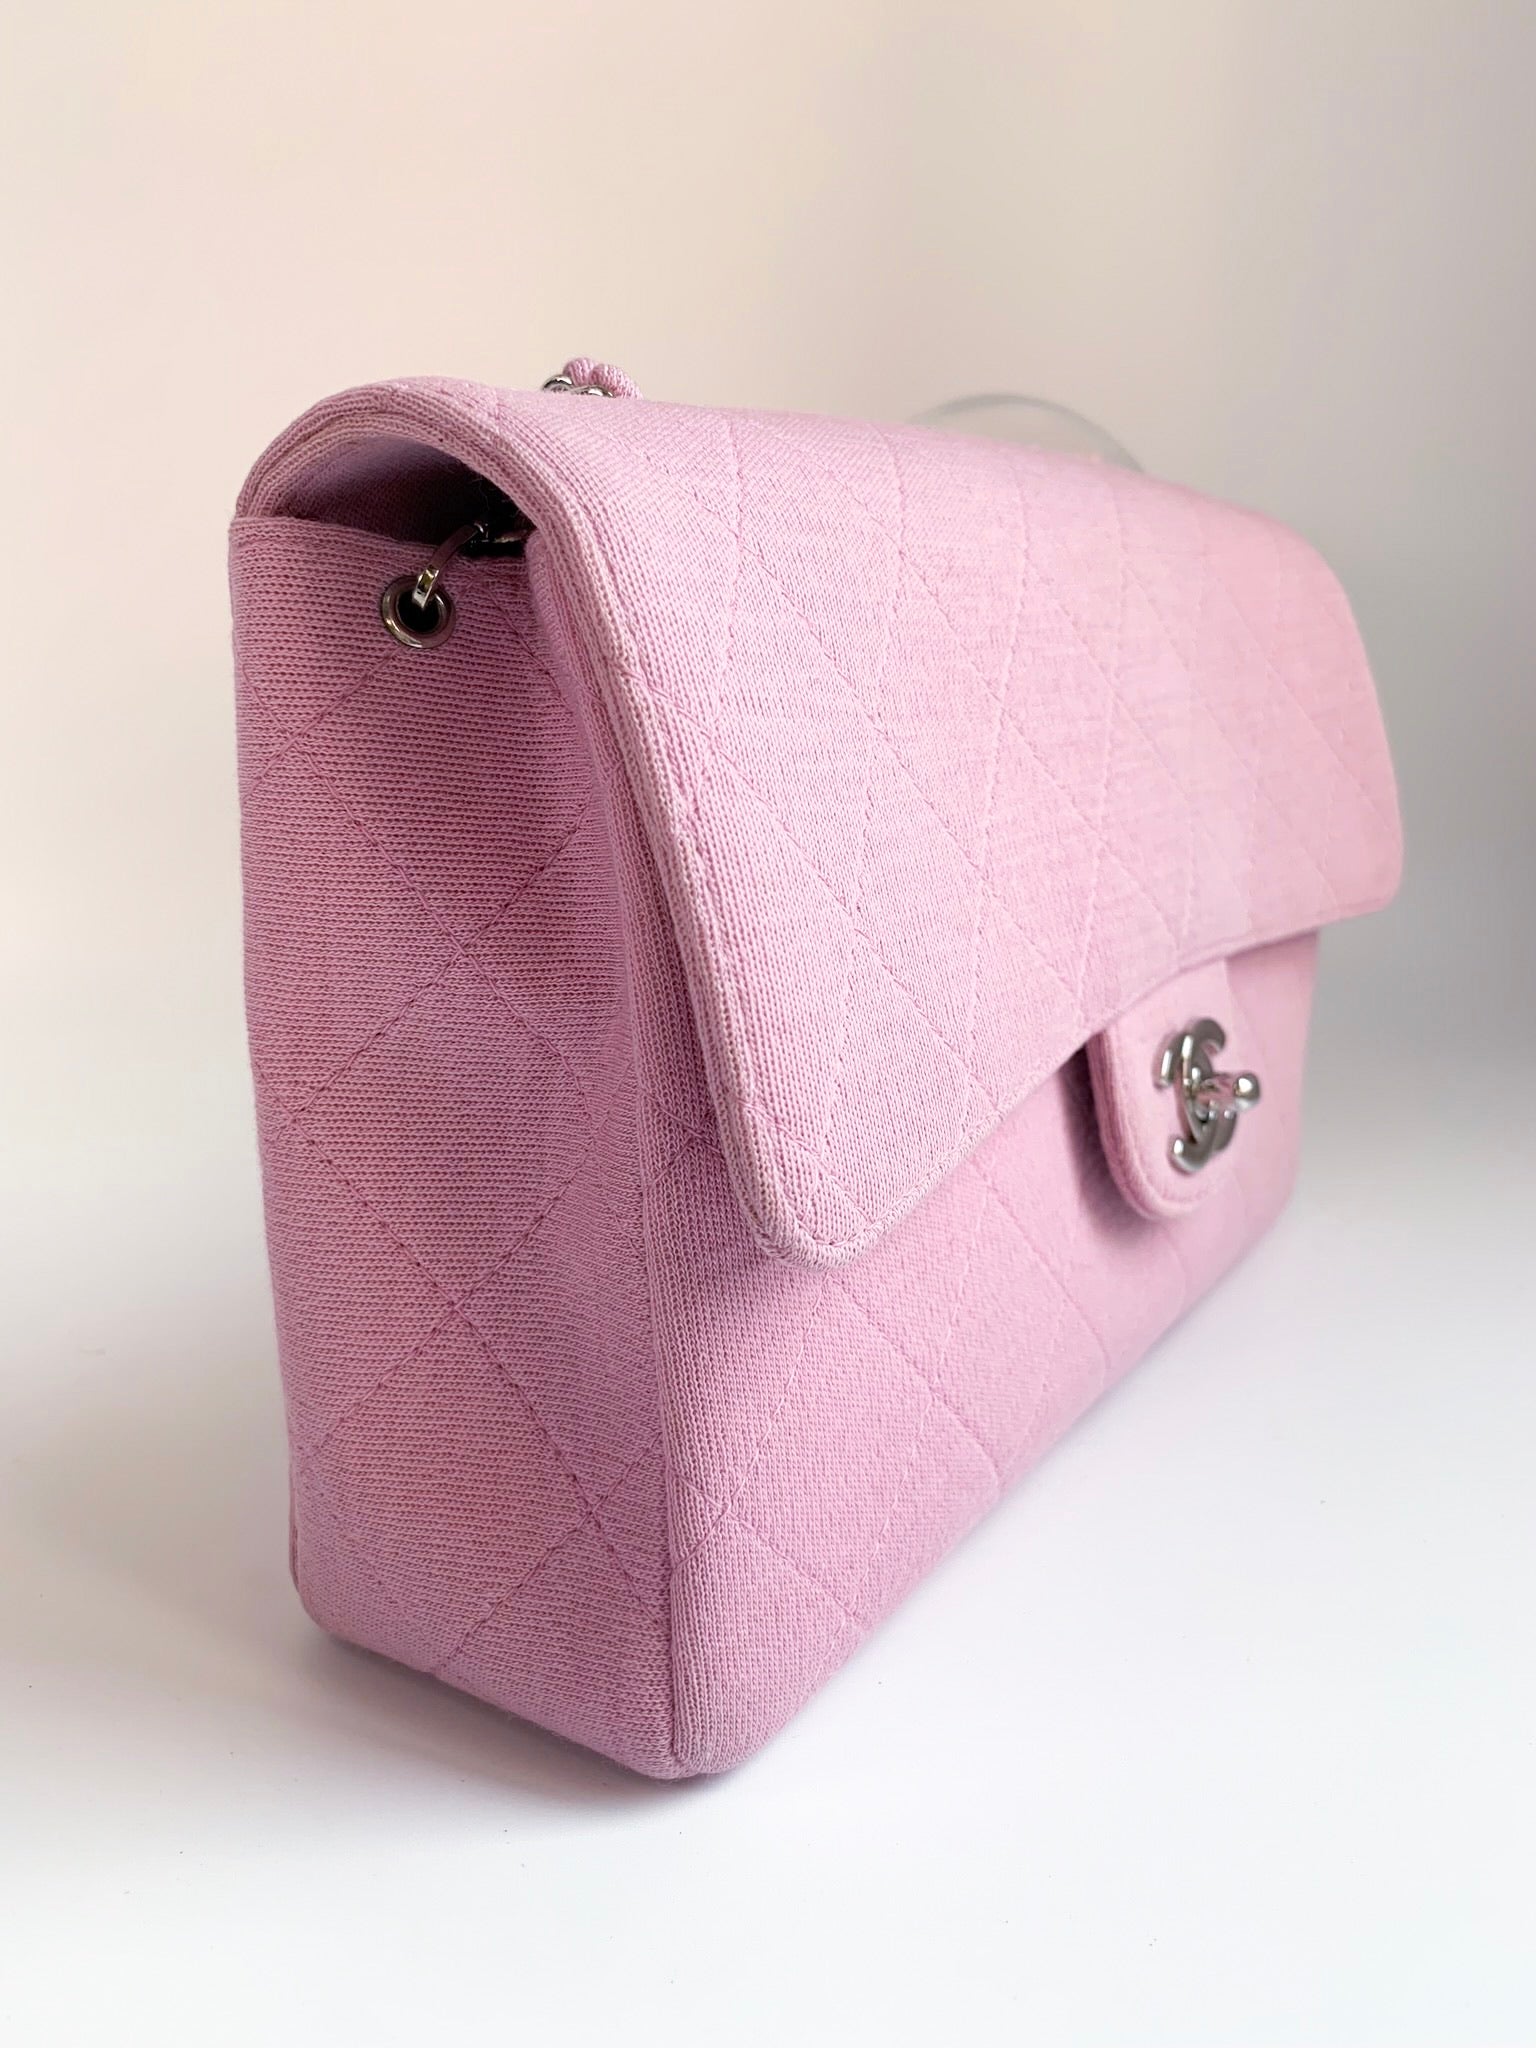 vintage pink chanel bag